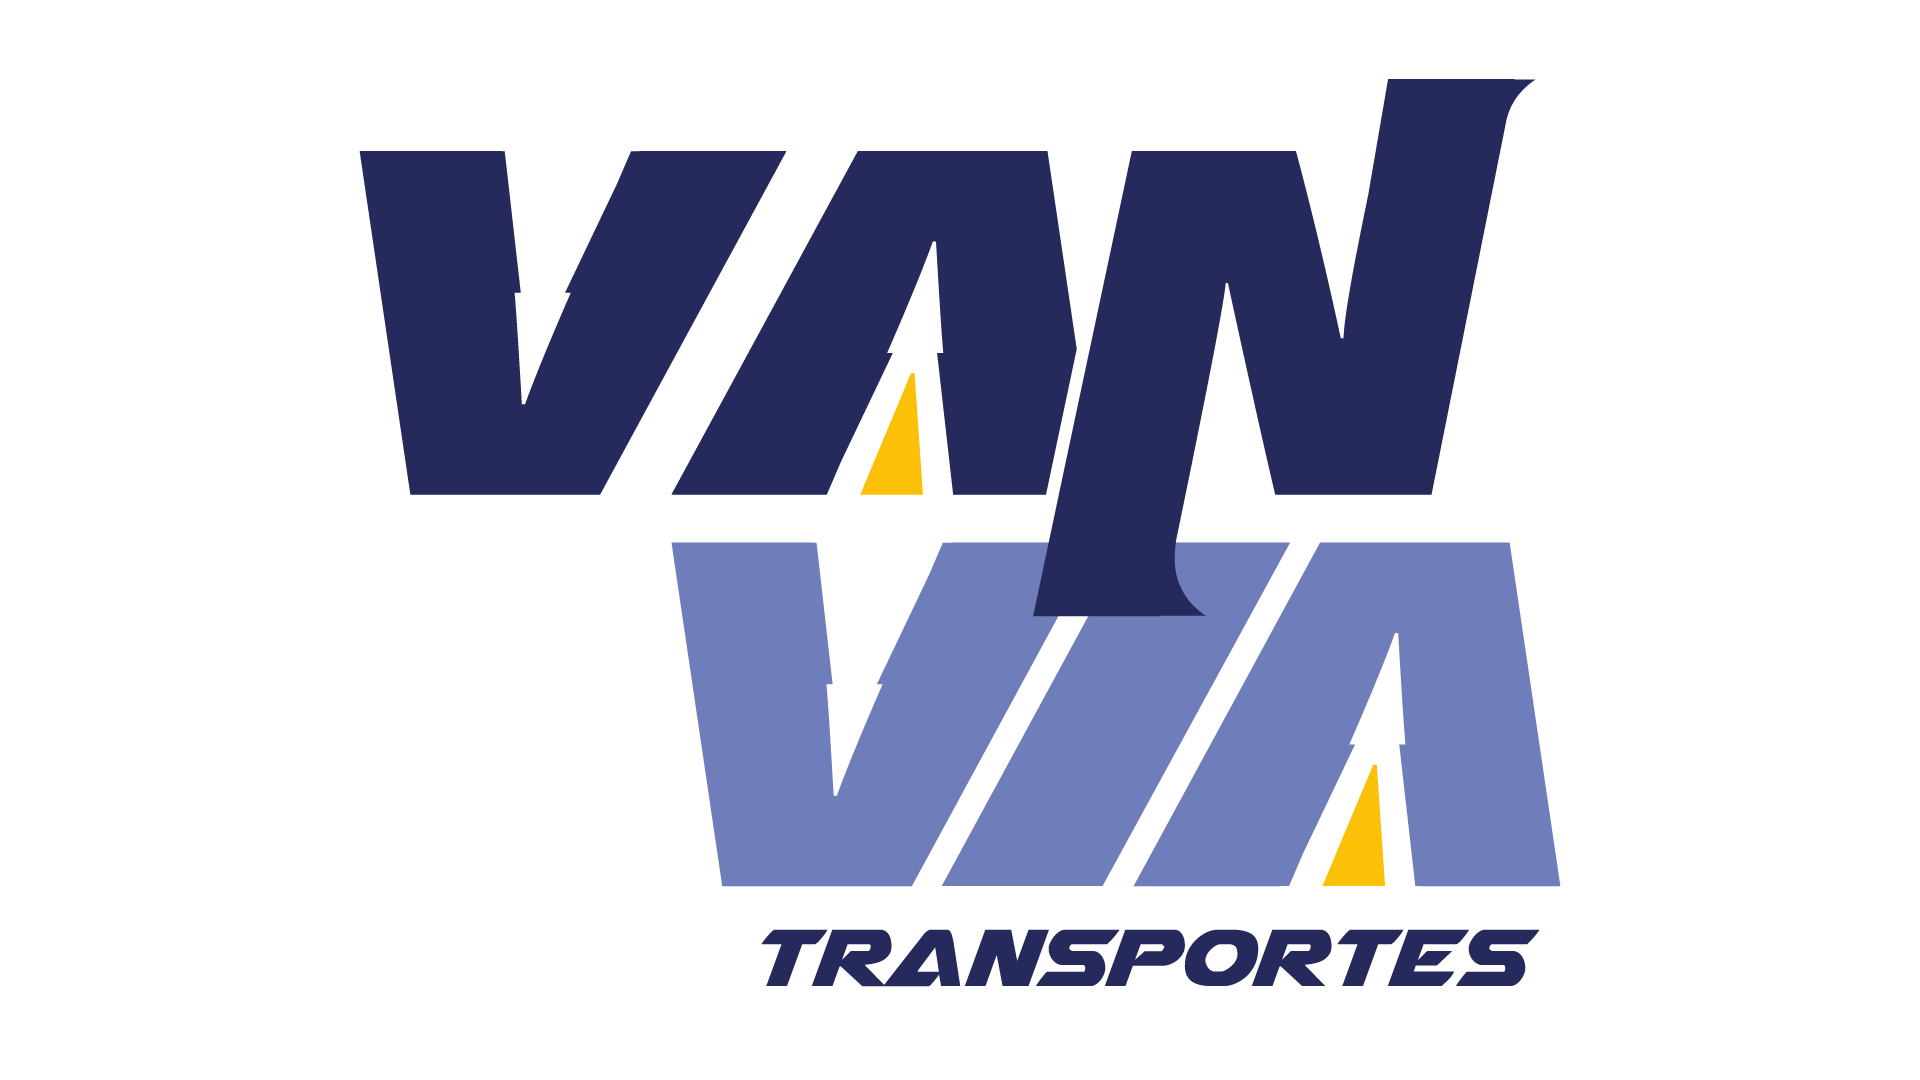 Logo da empresa Via transporte